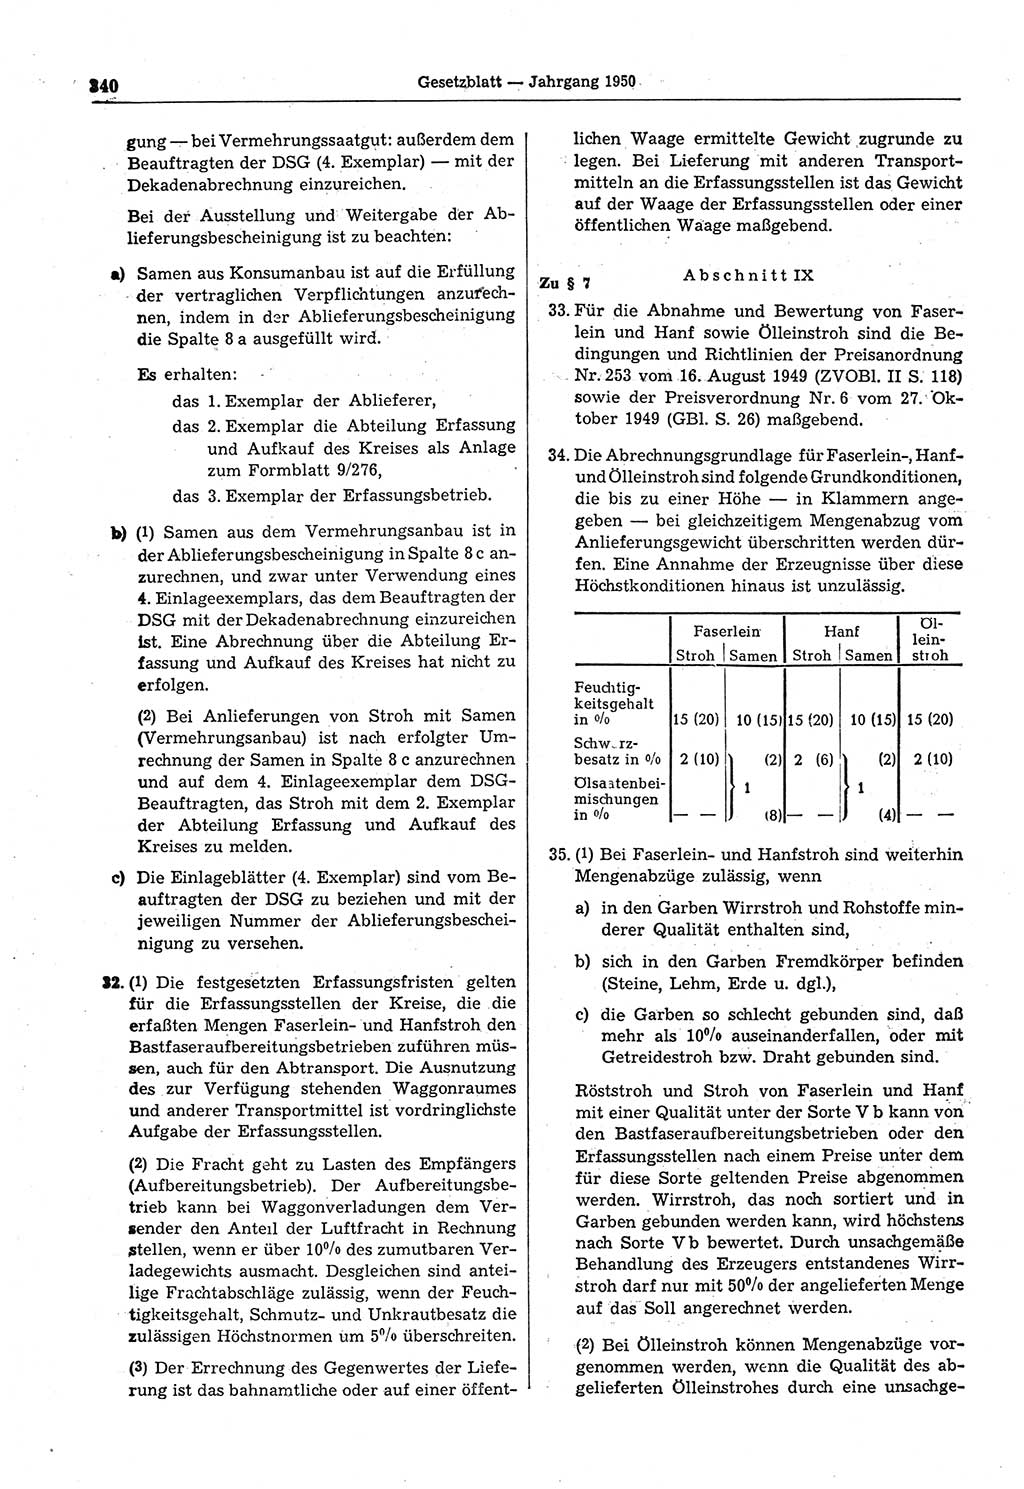 Gesetzblatt (GBl.) der Deutschen Demokratischen Republik (DDR) 1950, Seite 340 (GBl. DDR 1950, S. 340)